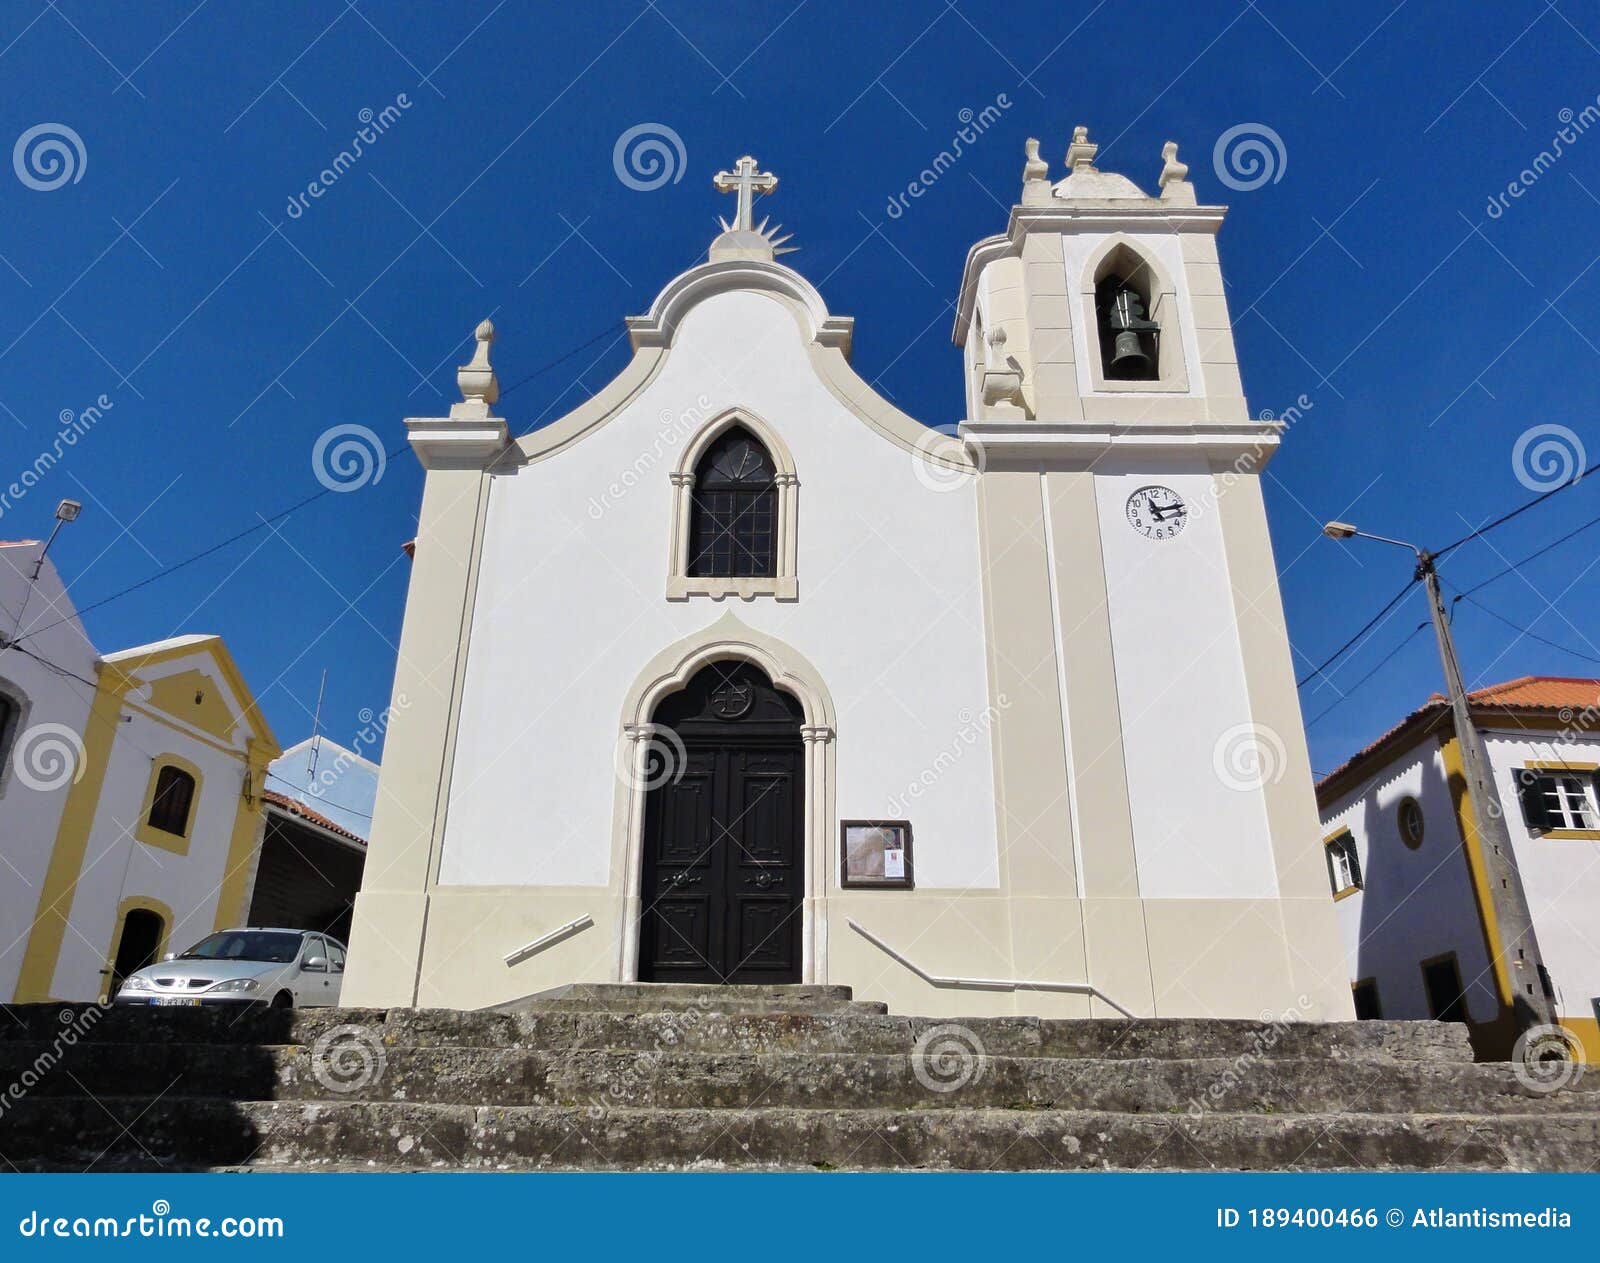 traditional church in salir do porto, centro - portugal